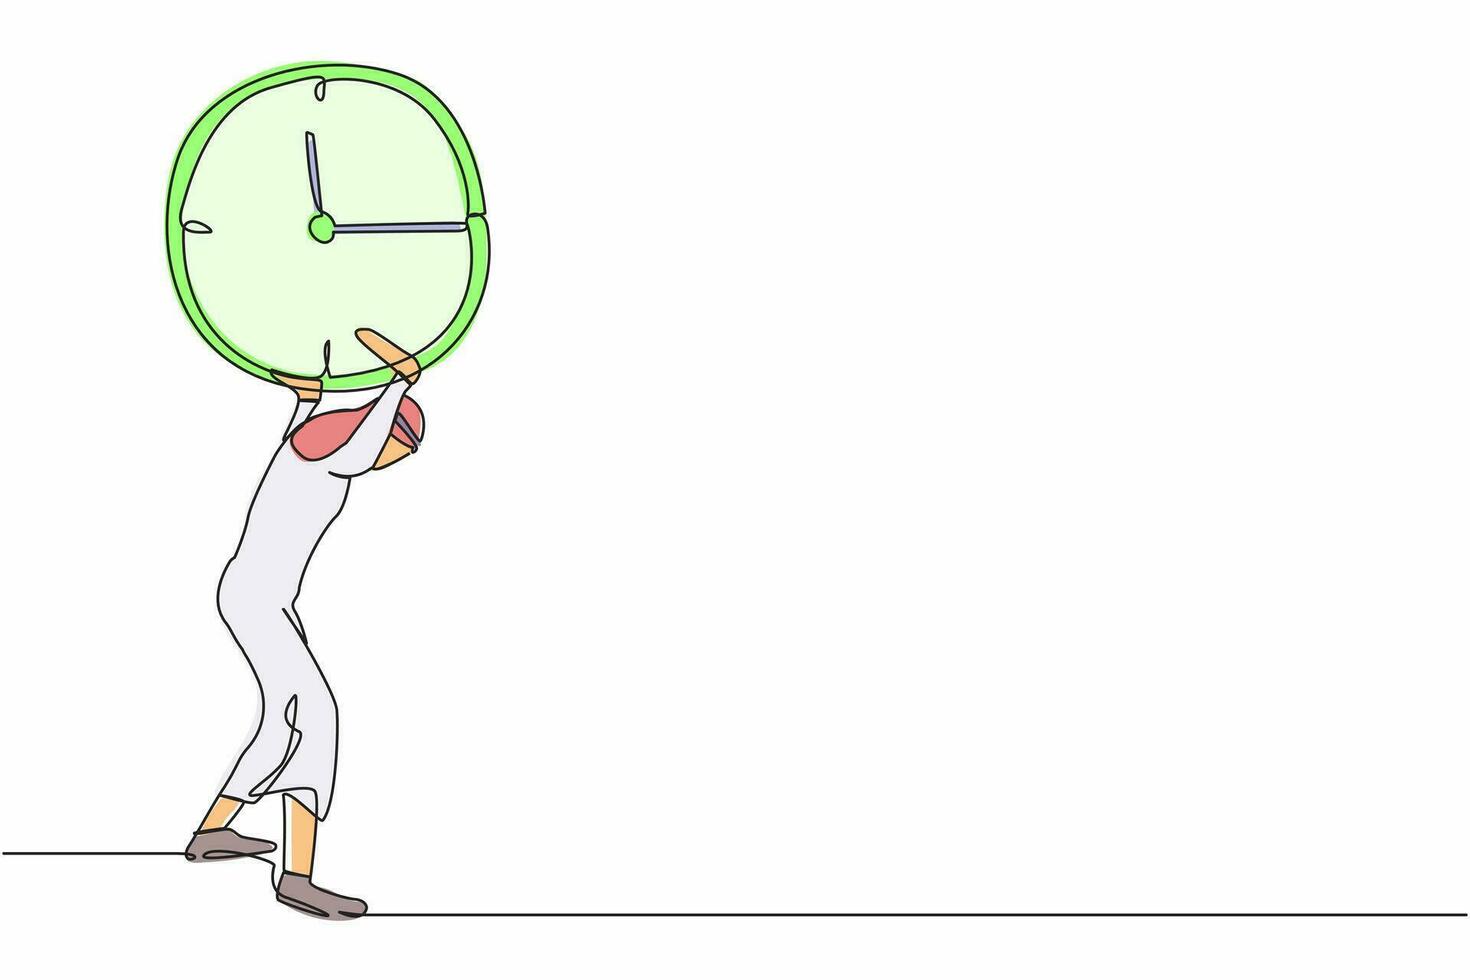 Single kontinuierlich Linie Zeichnung arabisch Geschäftsmann Tragen Uhr auf seine zurück. betont Arbeiter Arbeiten unter Druck zu abgeschlossen Geschäft Projekt Termin. einer Linie Grafik Design Vektor Illustration